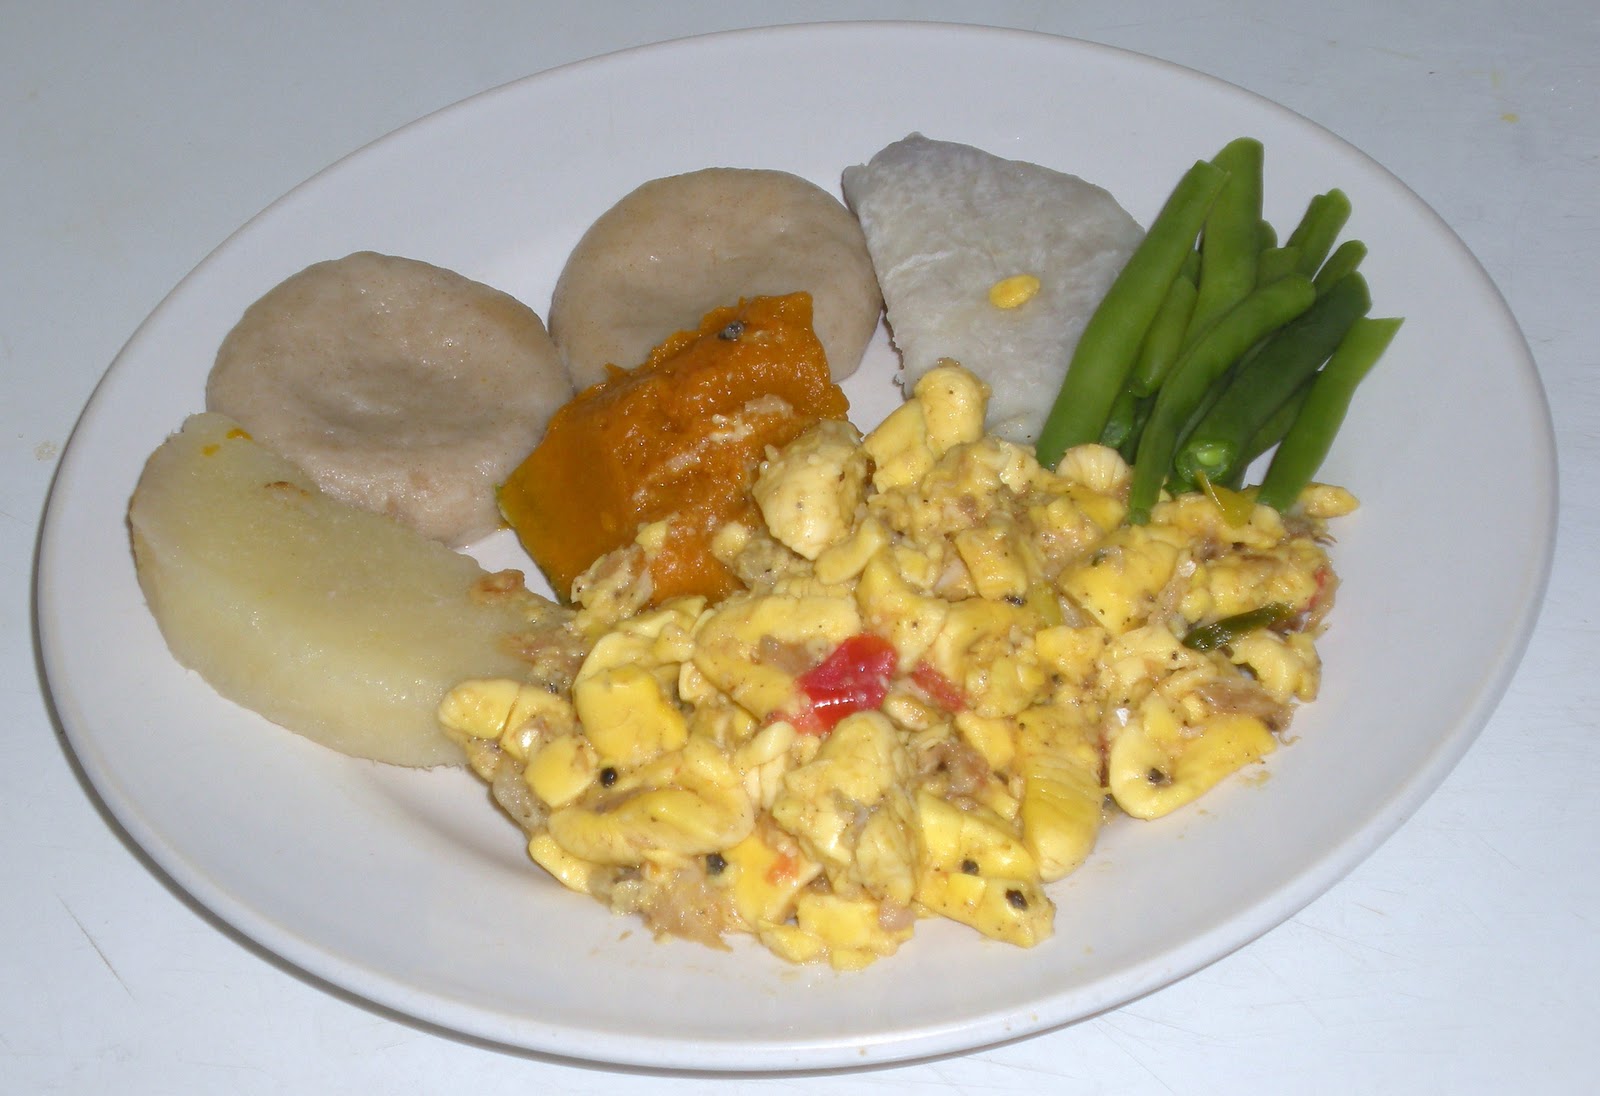 Jamaican Cuisine